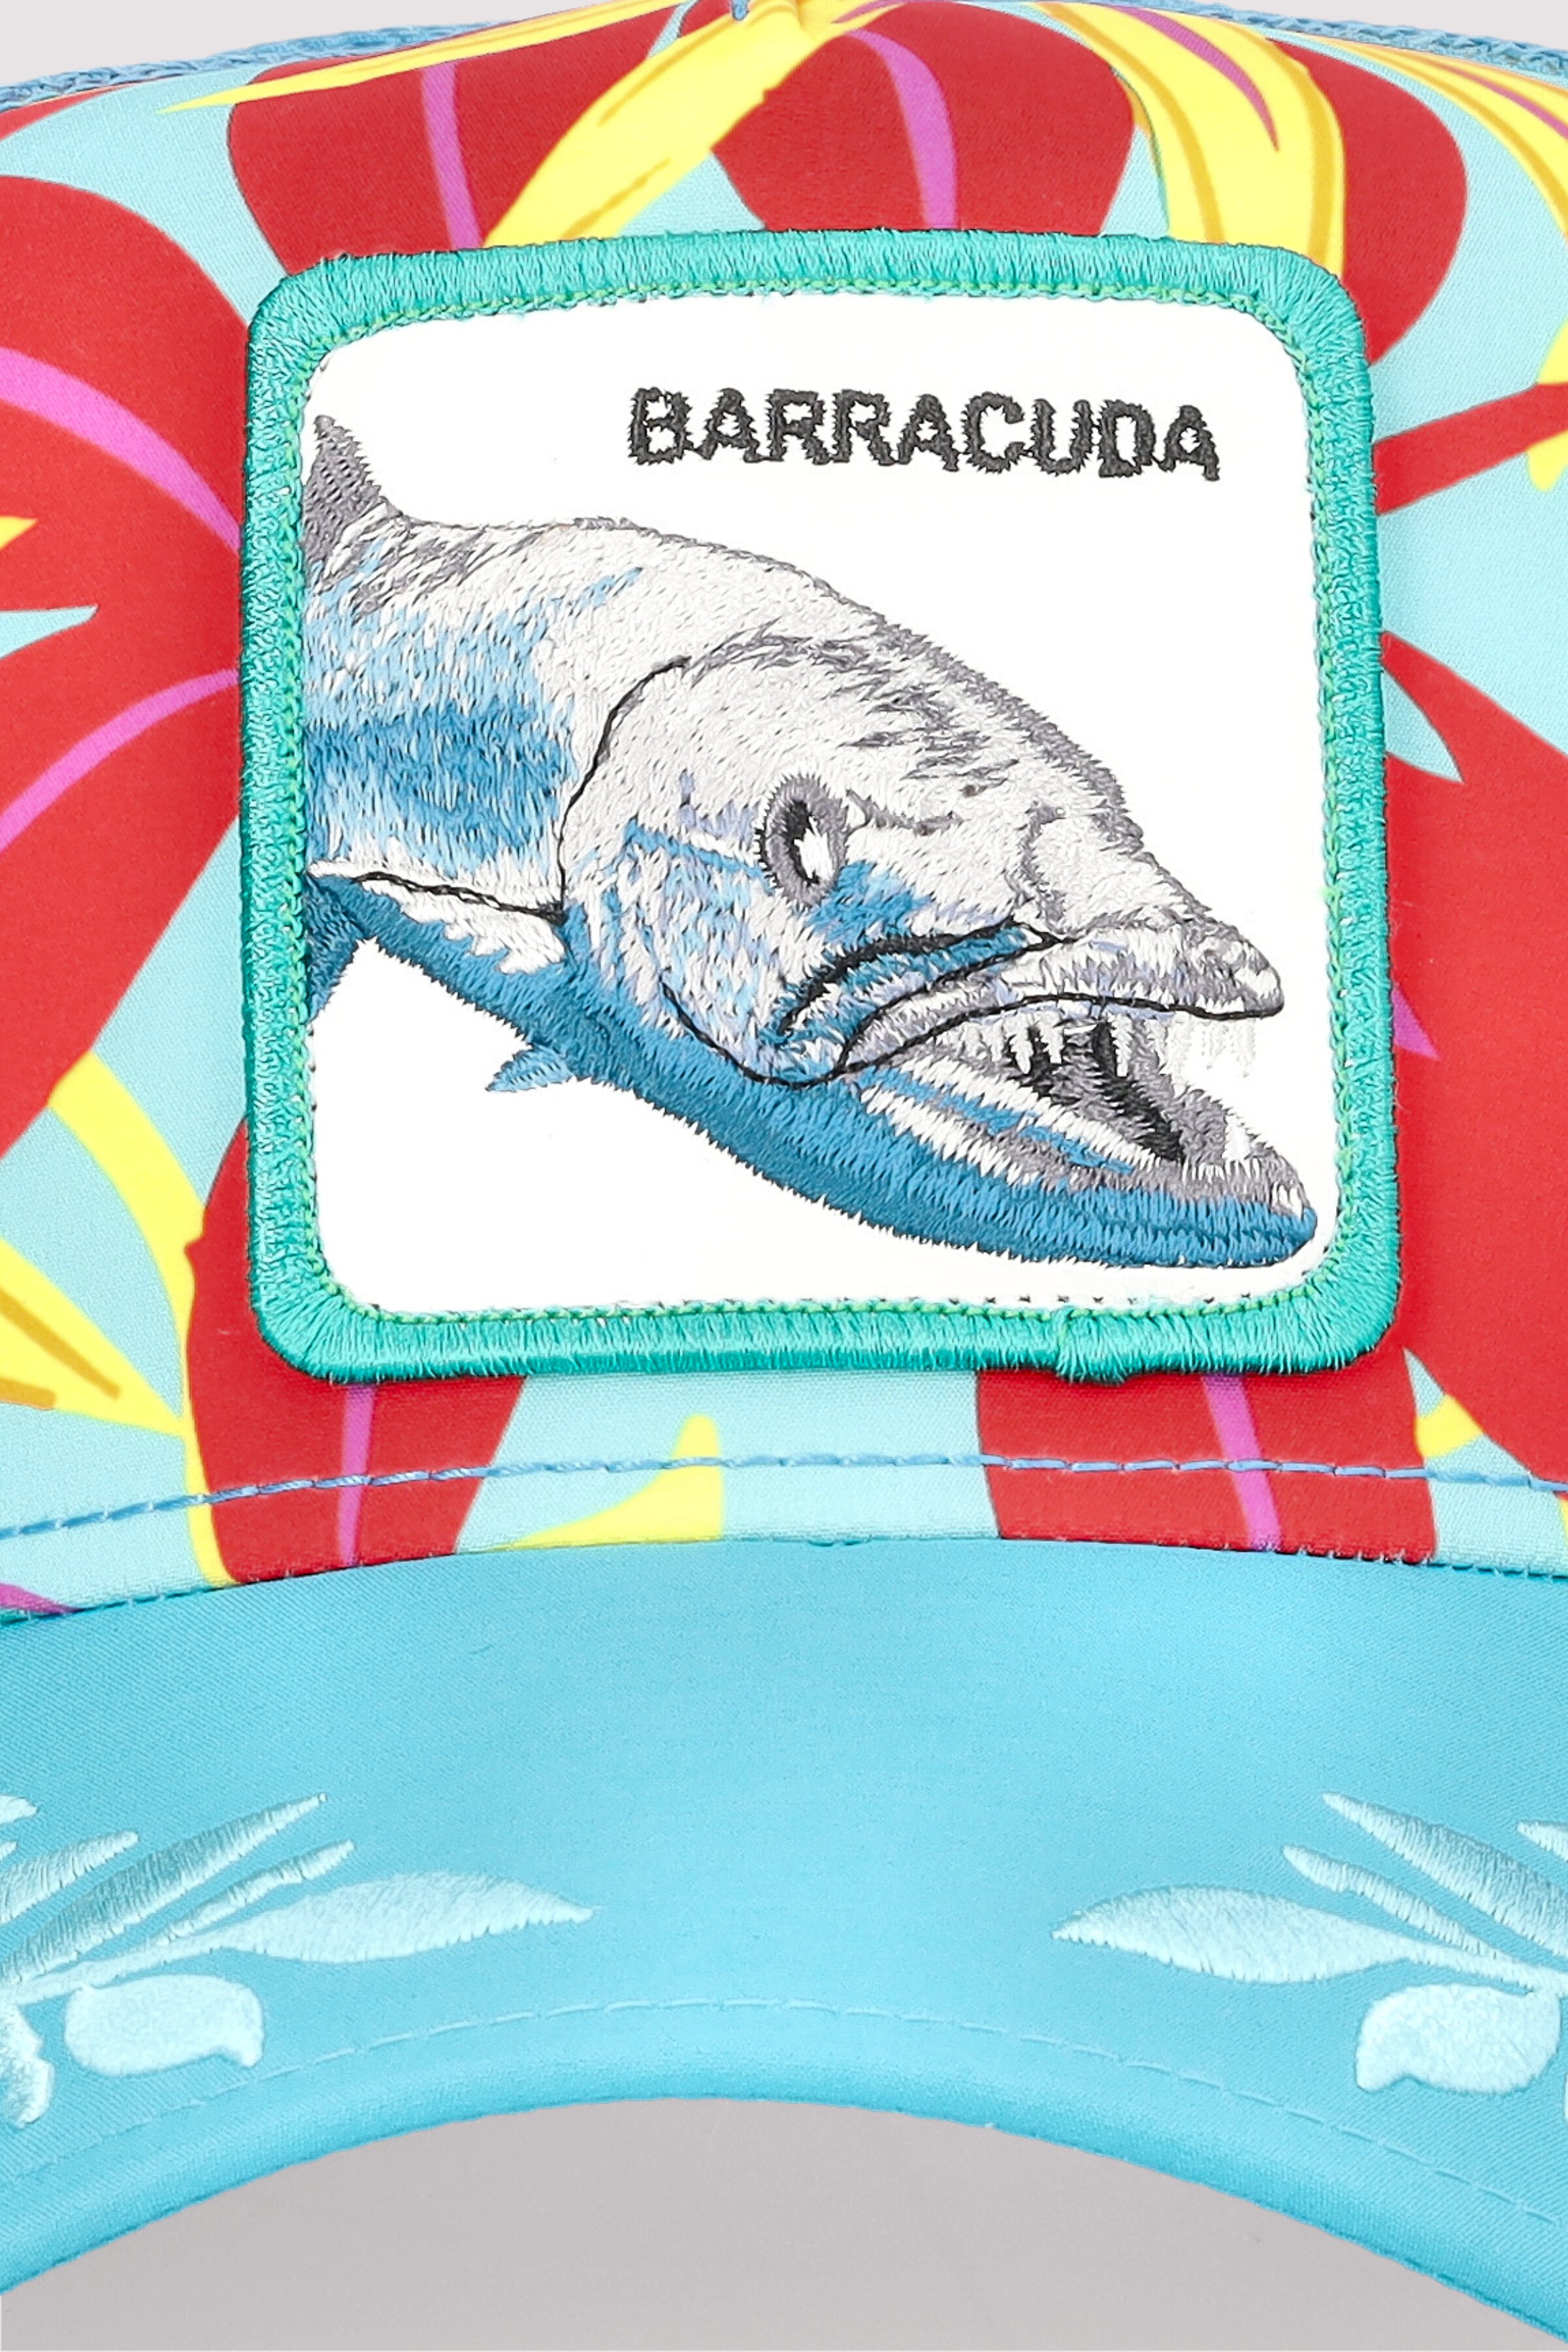 Ooh Barracuda